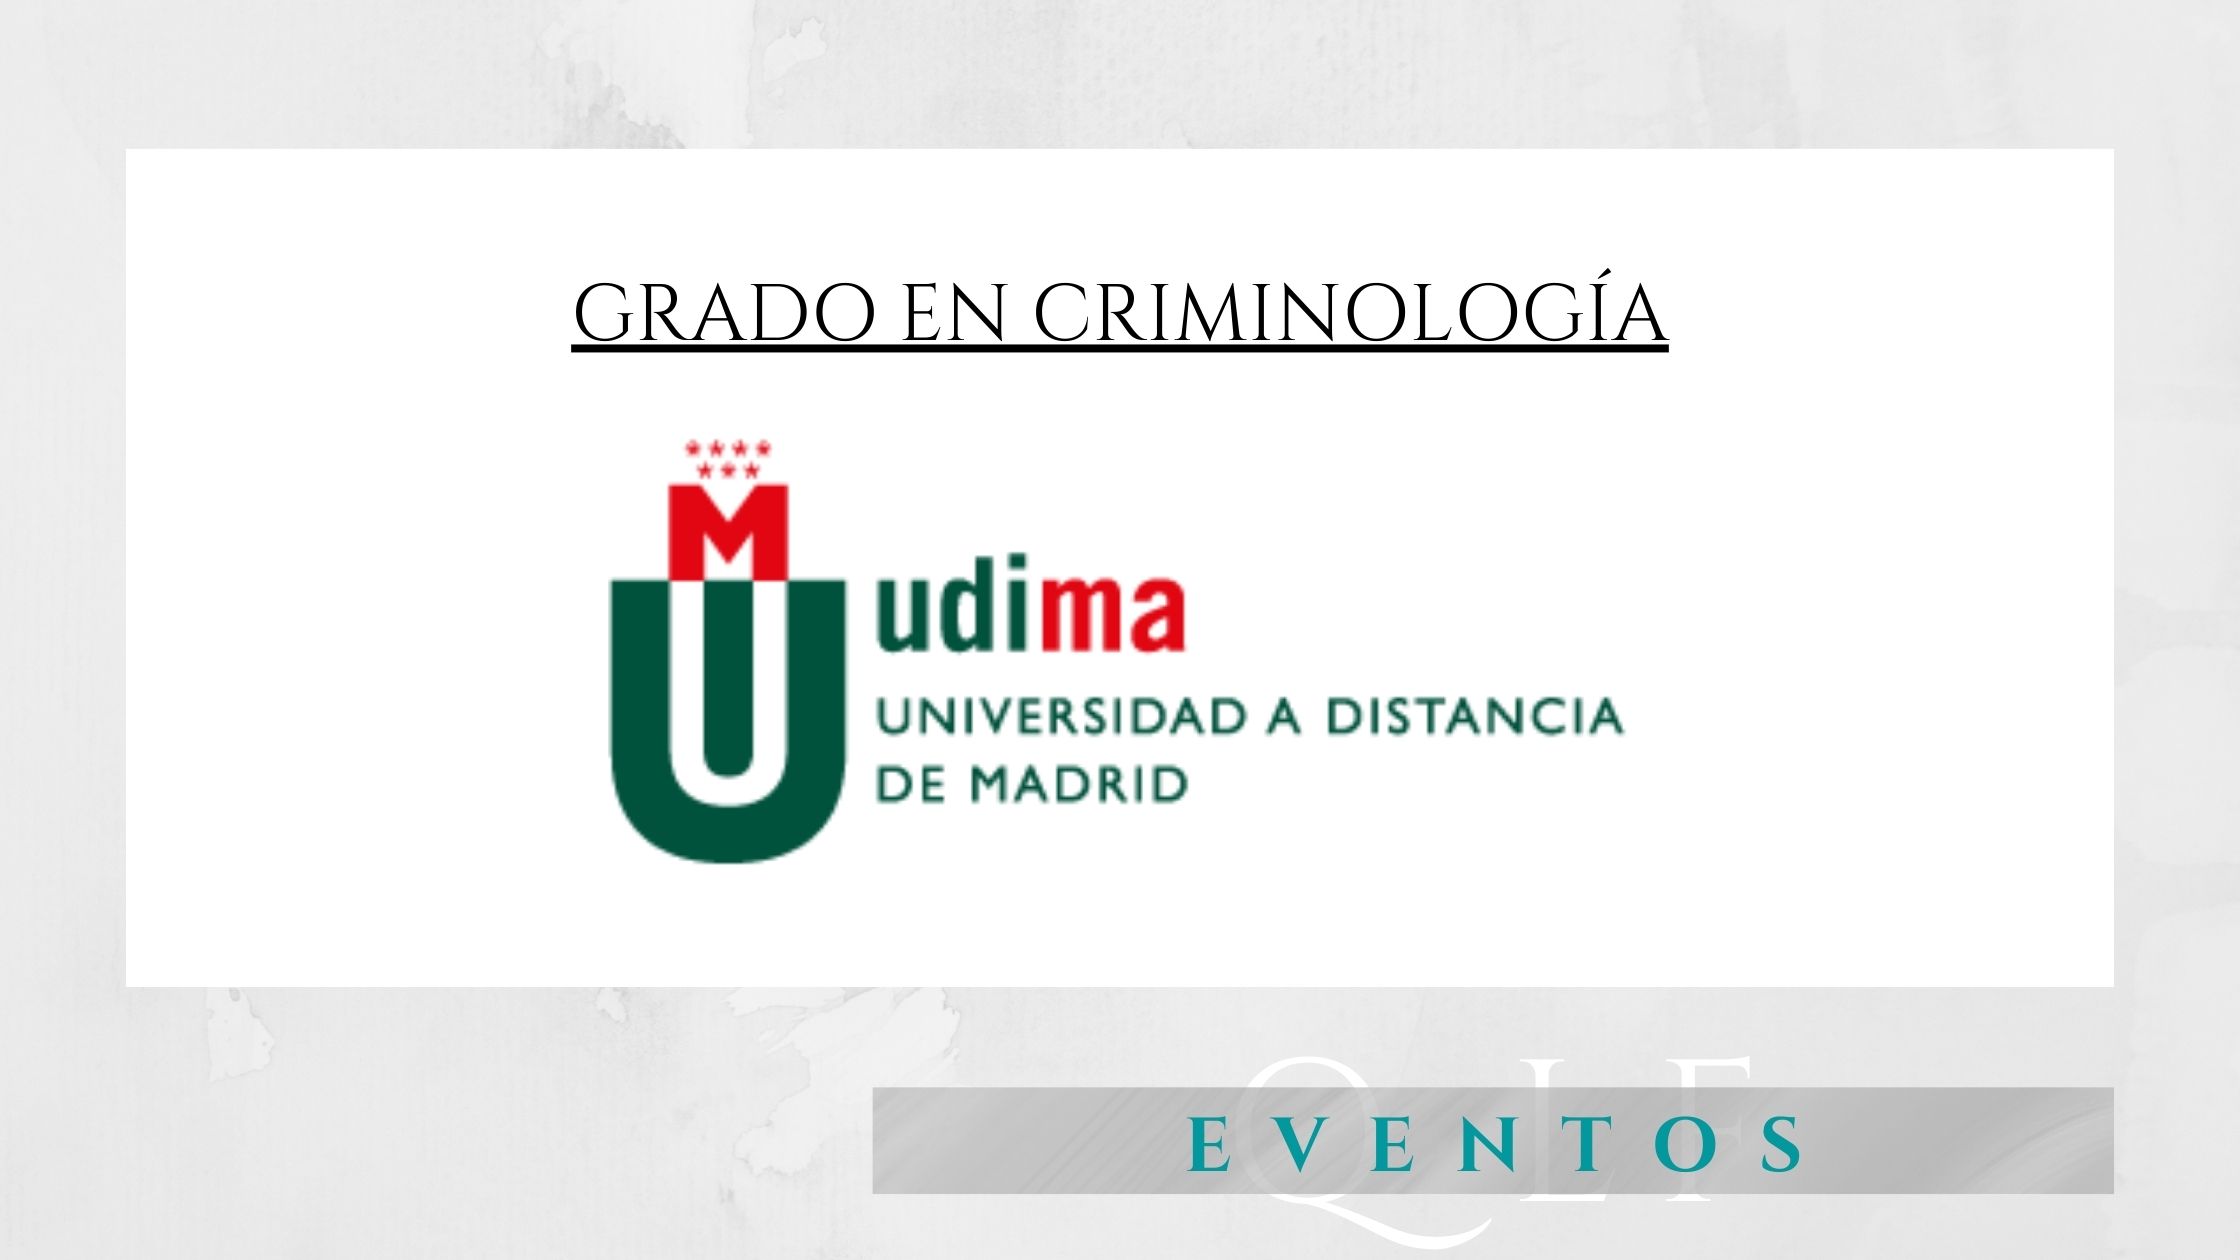 Quiara López Ferrer abogada penalista comienza estudio del delito grado criminología UDIMA Madrid